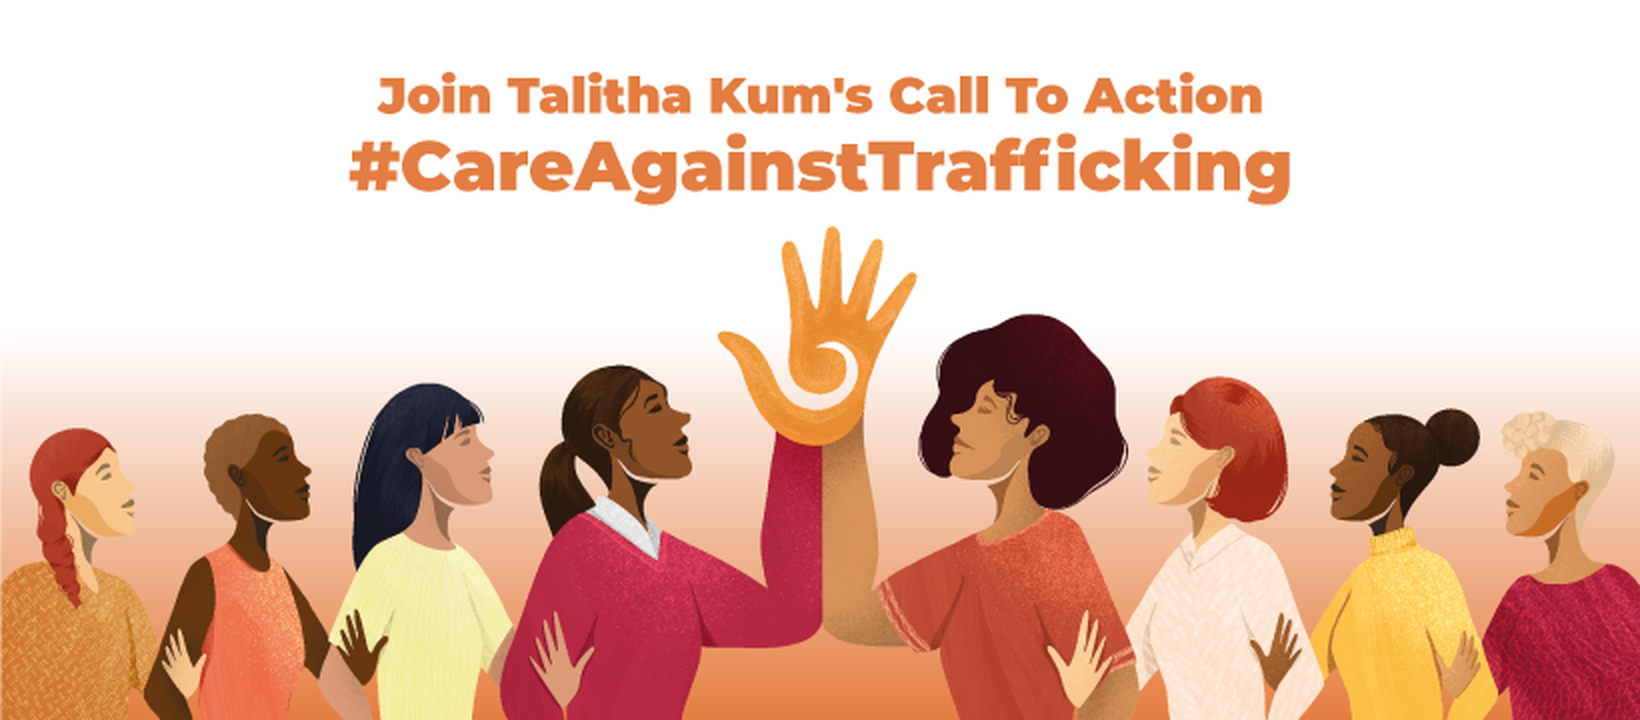 25 de Novembro de 2021 – Apresentação da chamada à ação de Talitha Kum